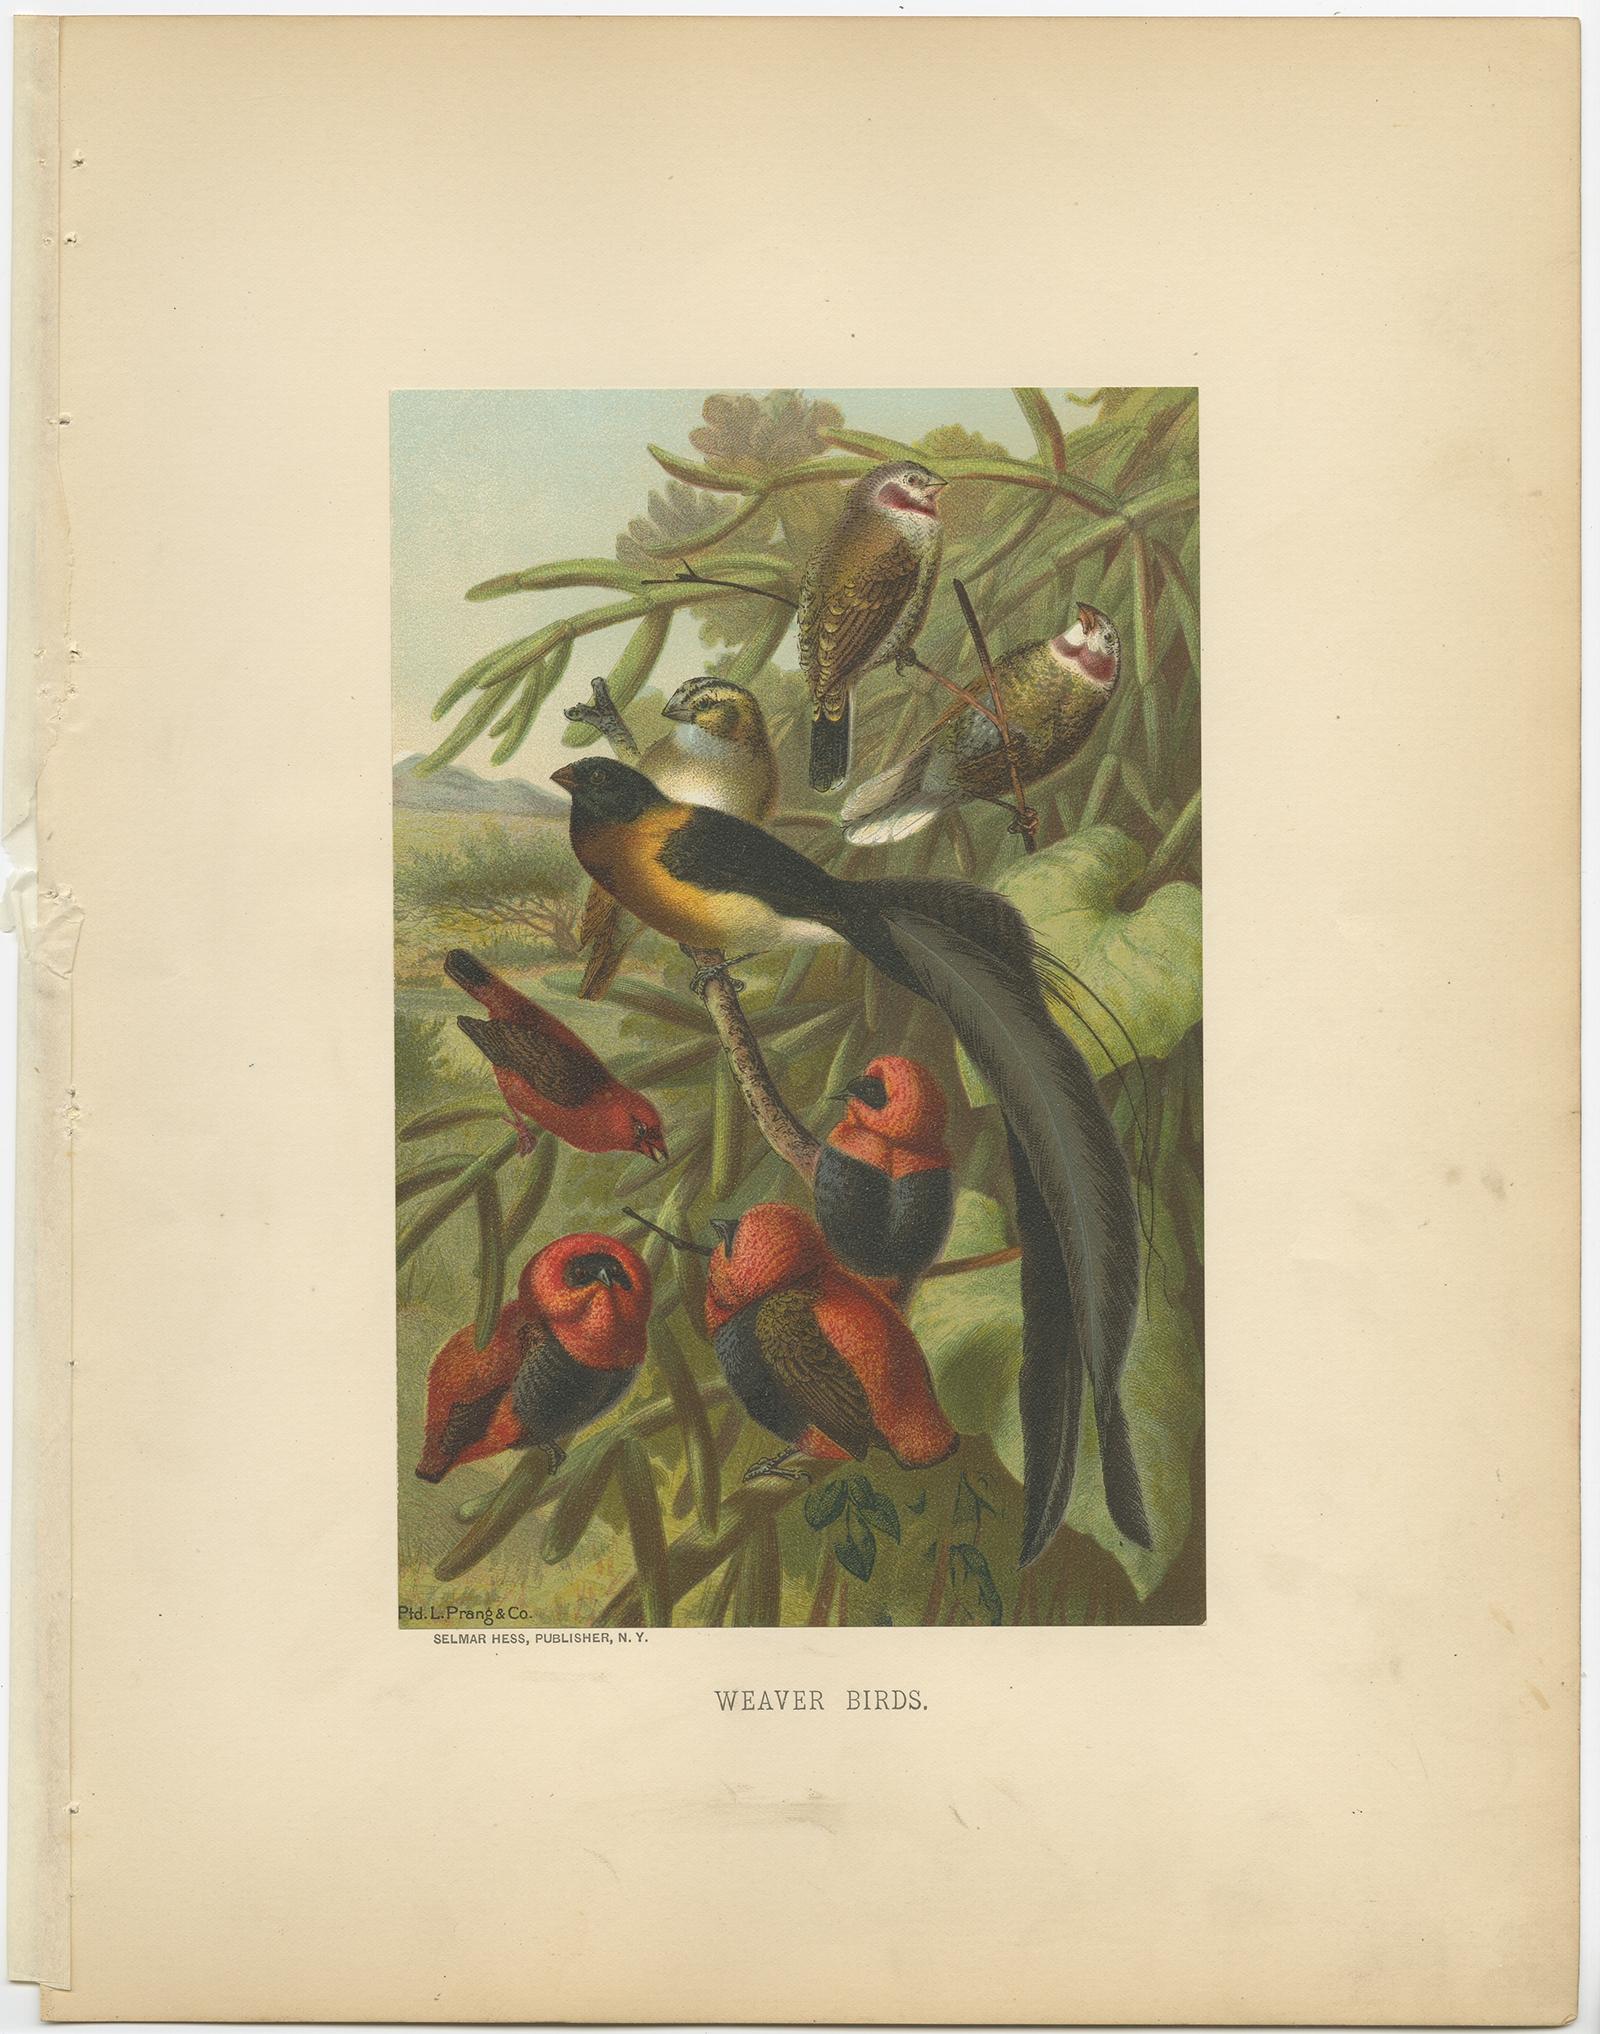 Antiker Vogeldruck mit dem Titel 'Weaver Birds'. Alter Vogeldruck mit Darstellung von Webervögeln. Diese Chromolithographie stammt aus der 1898 von Selmar Hess in New York herausgegebenen naturkundlichen Sammlung 